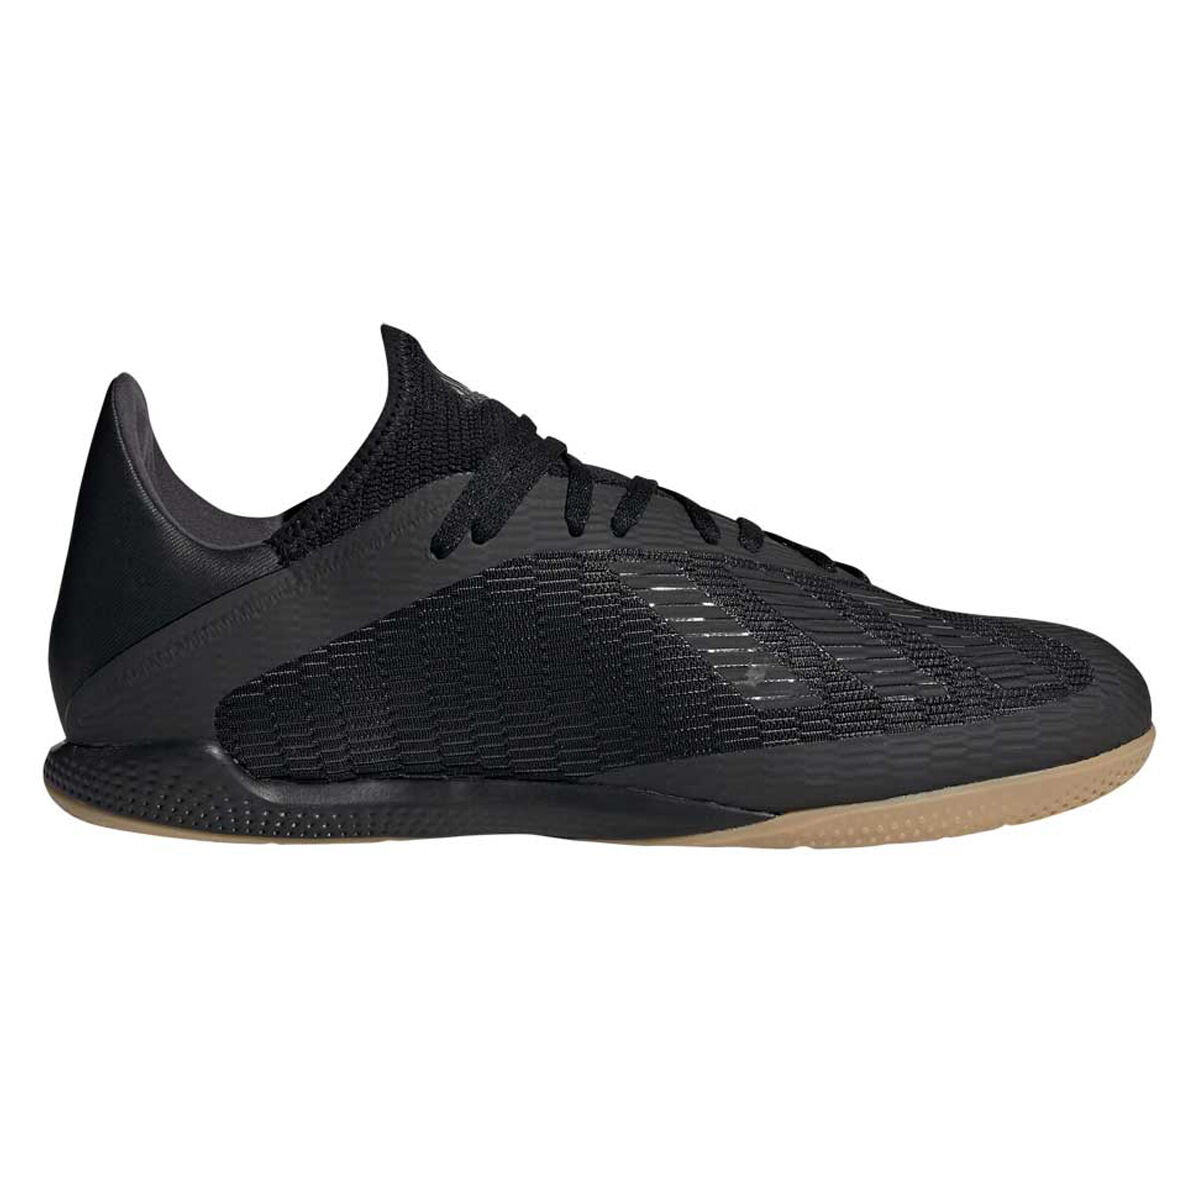 adidas indoor futsal shoes